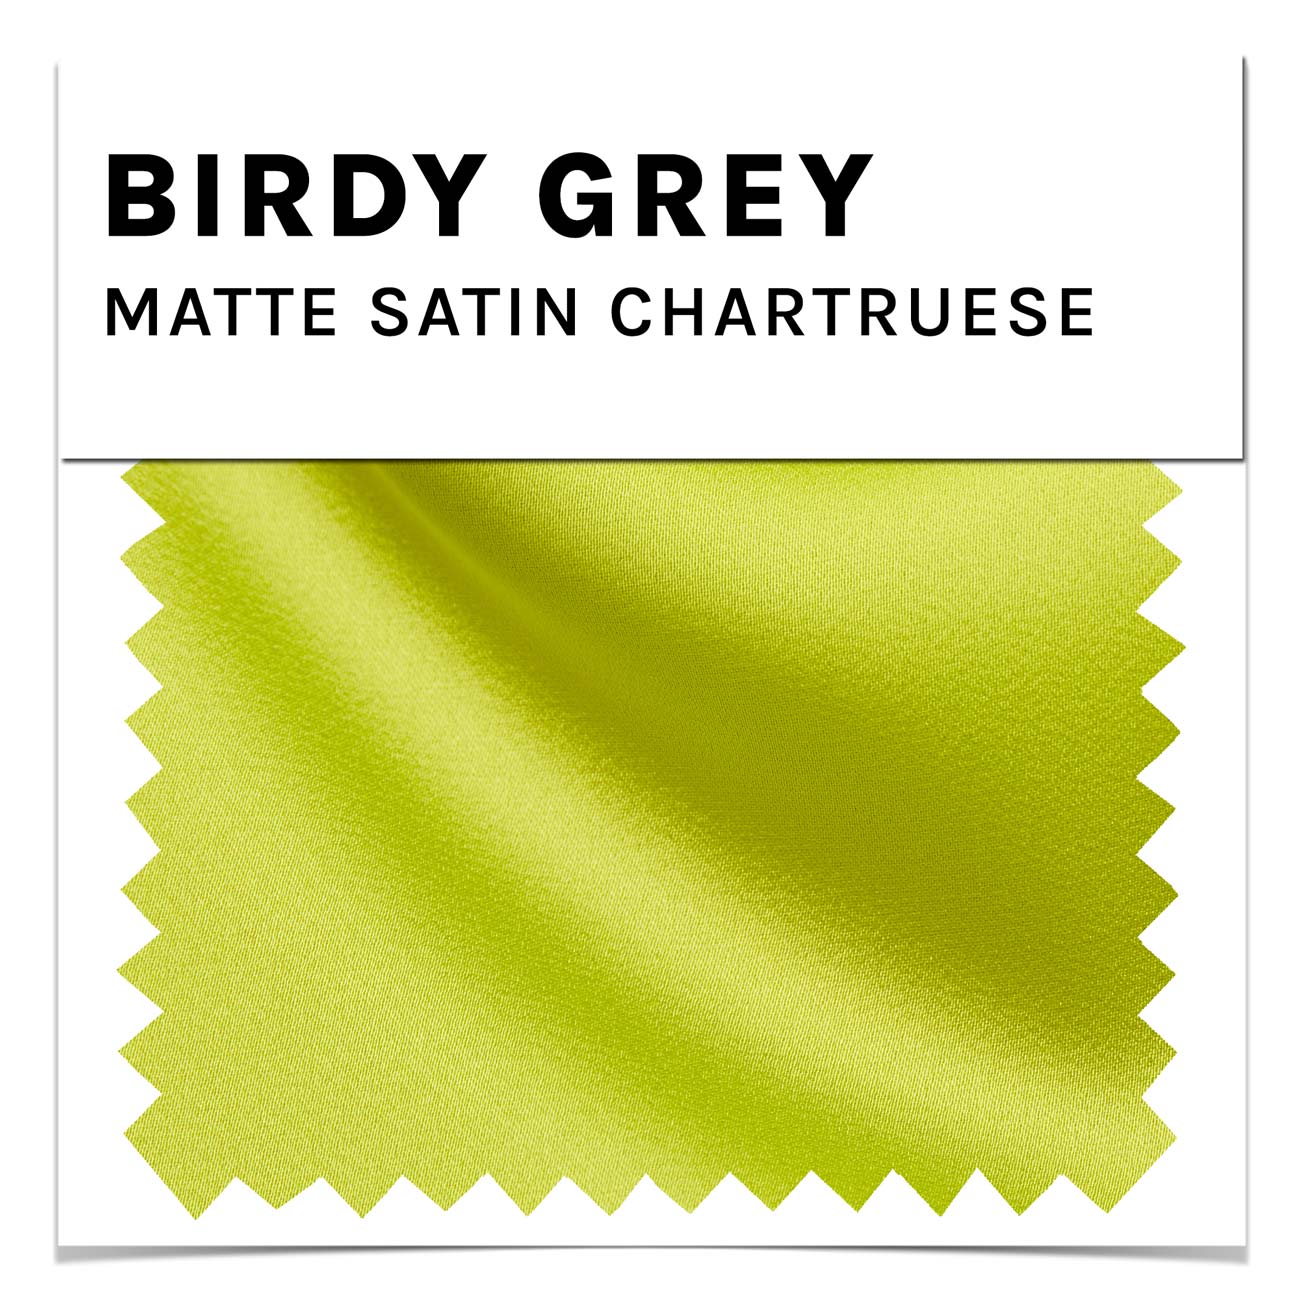 Chartruese Matte Satin Swatch by Birdy Grey